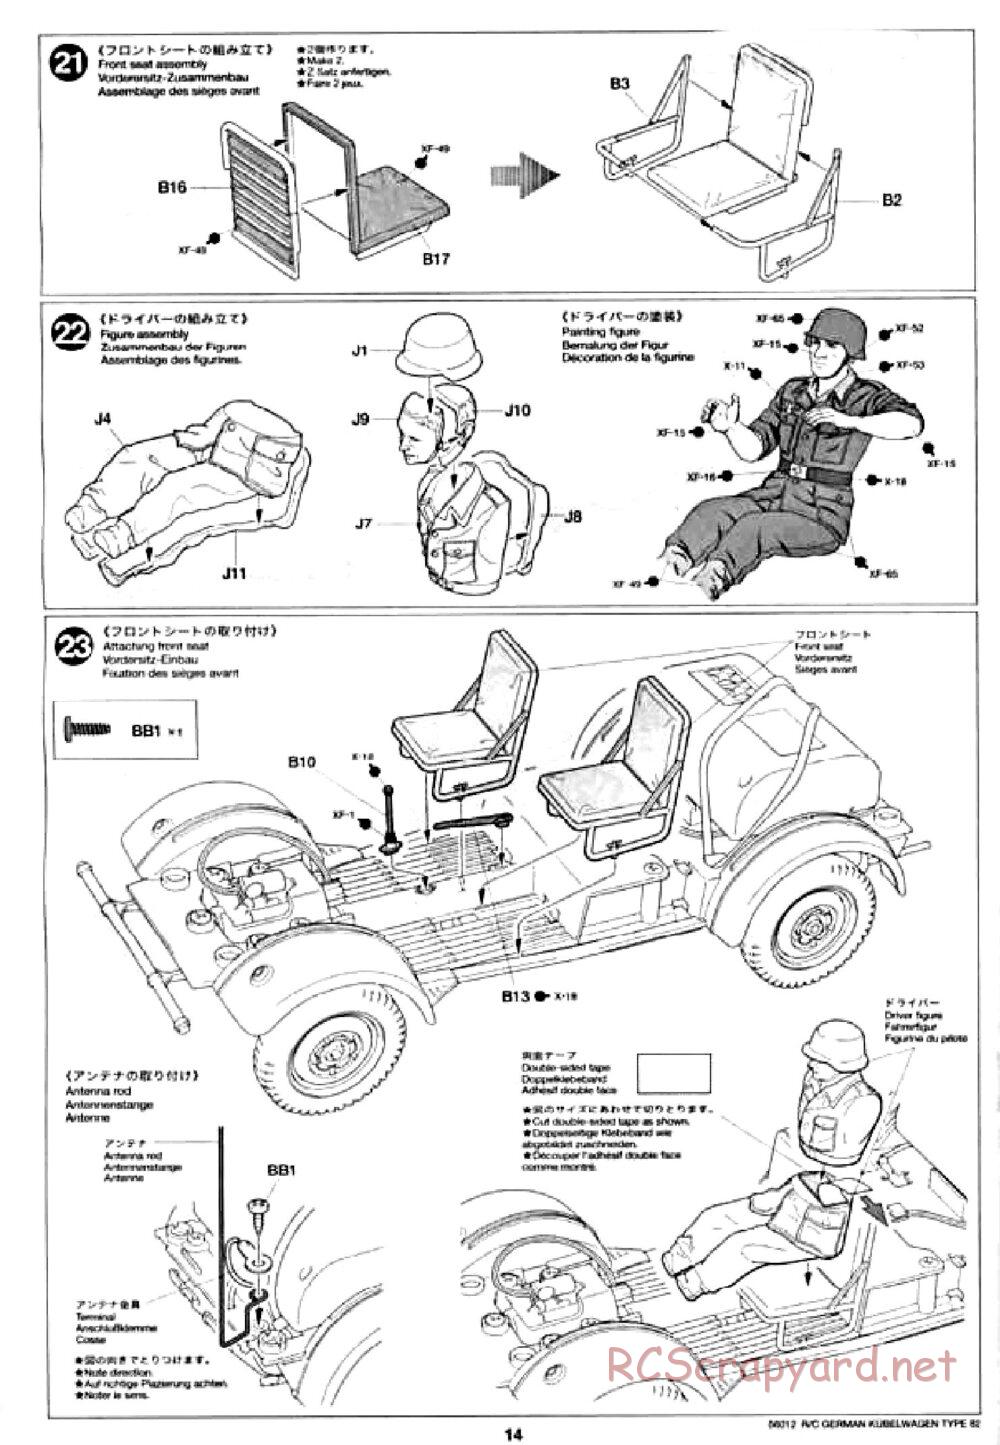 Tamiya - Kubelwagen Type 82 Chassis - Manual - Page 14